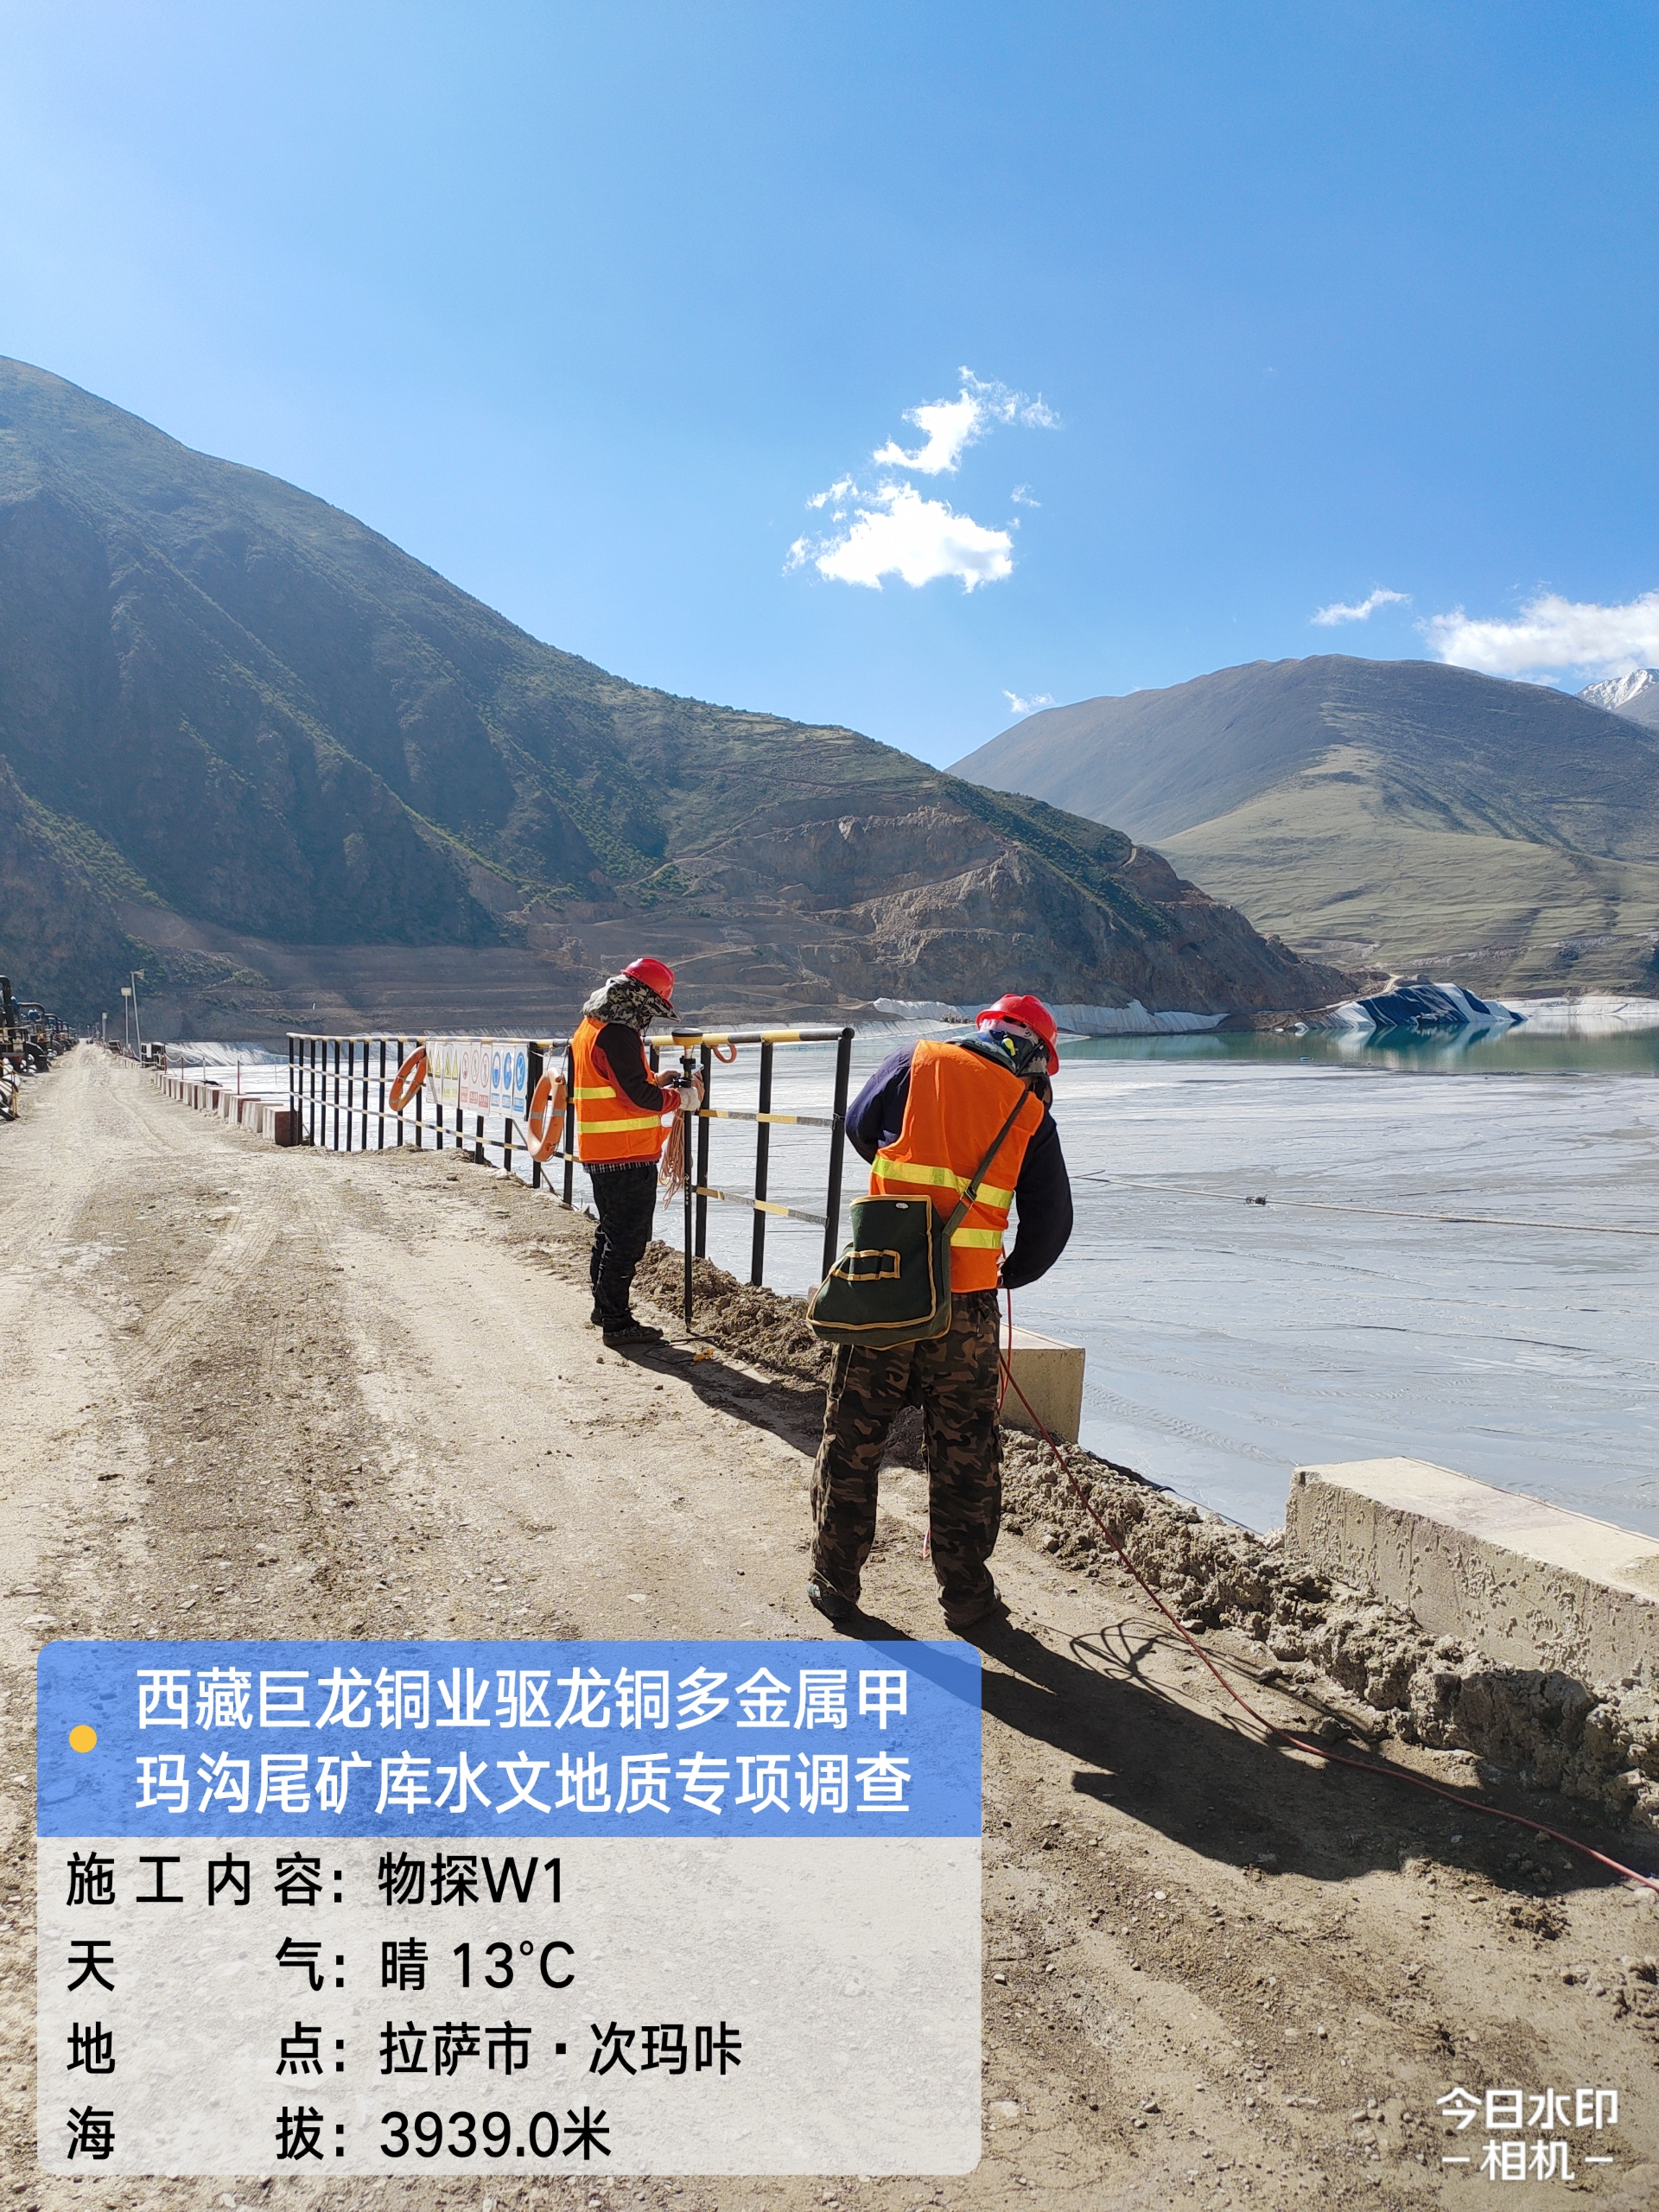 新征程|四川冶勘設計集團遠征西藏巨龍銅礦